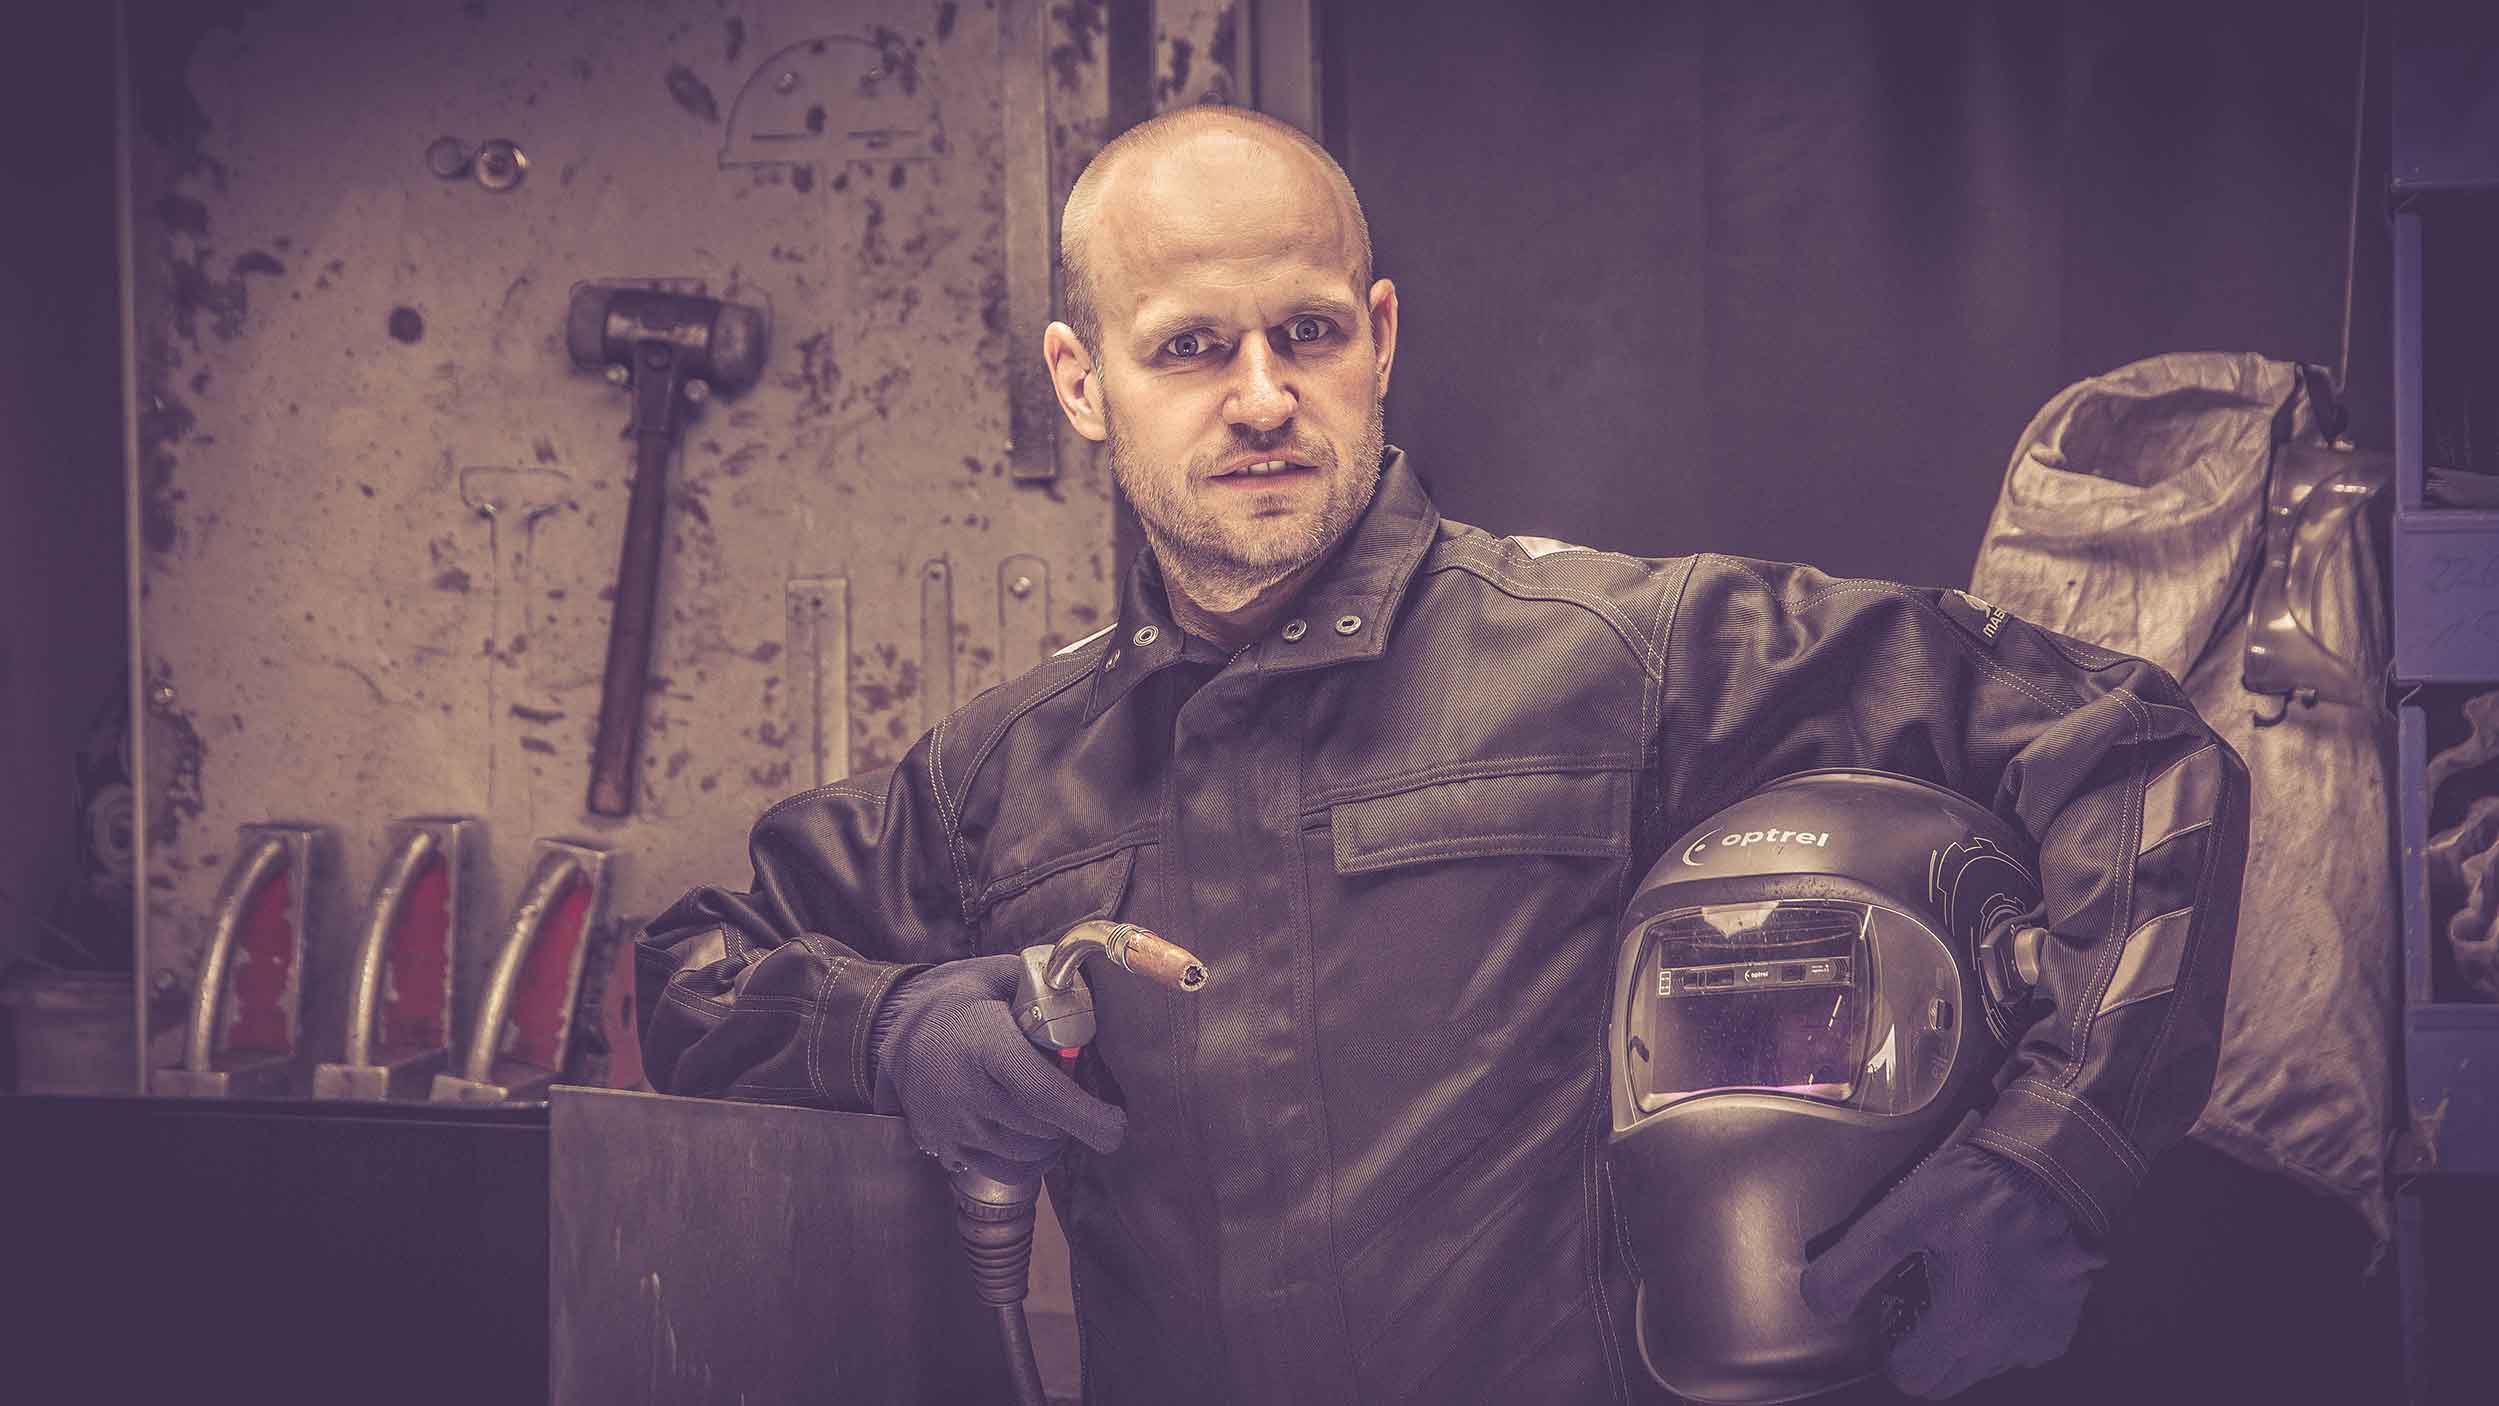 Jürgen, ein erfahrener Handwerker bei Rostikal, hält Schweißgerät und Schweißhelm, bereit für qualitativ hochwertige Metallbearbeitung